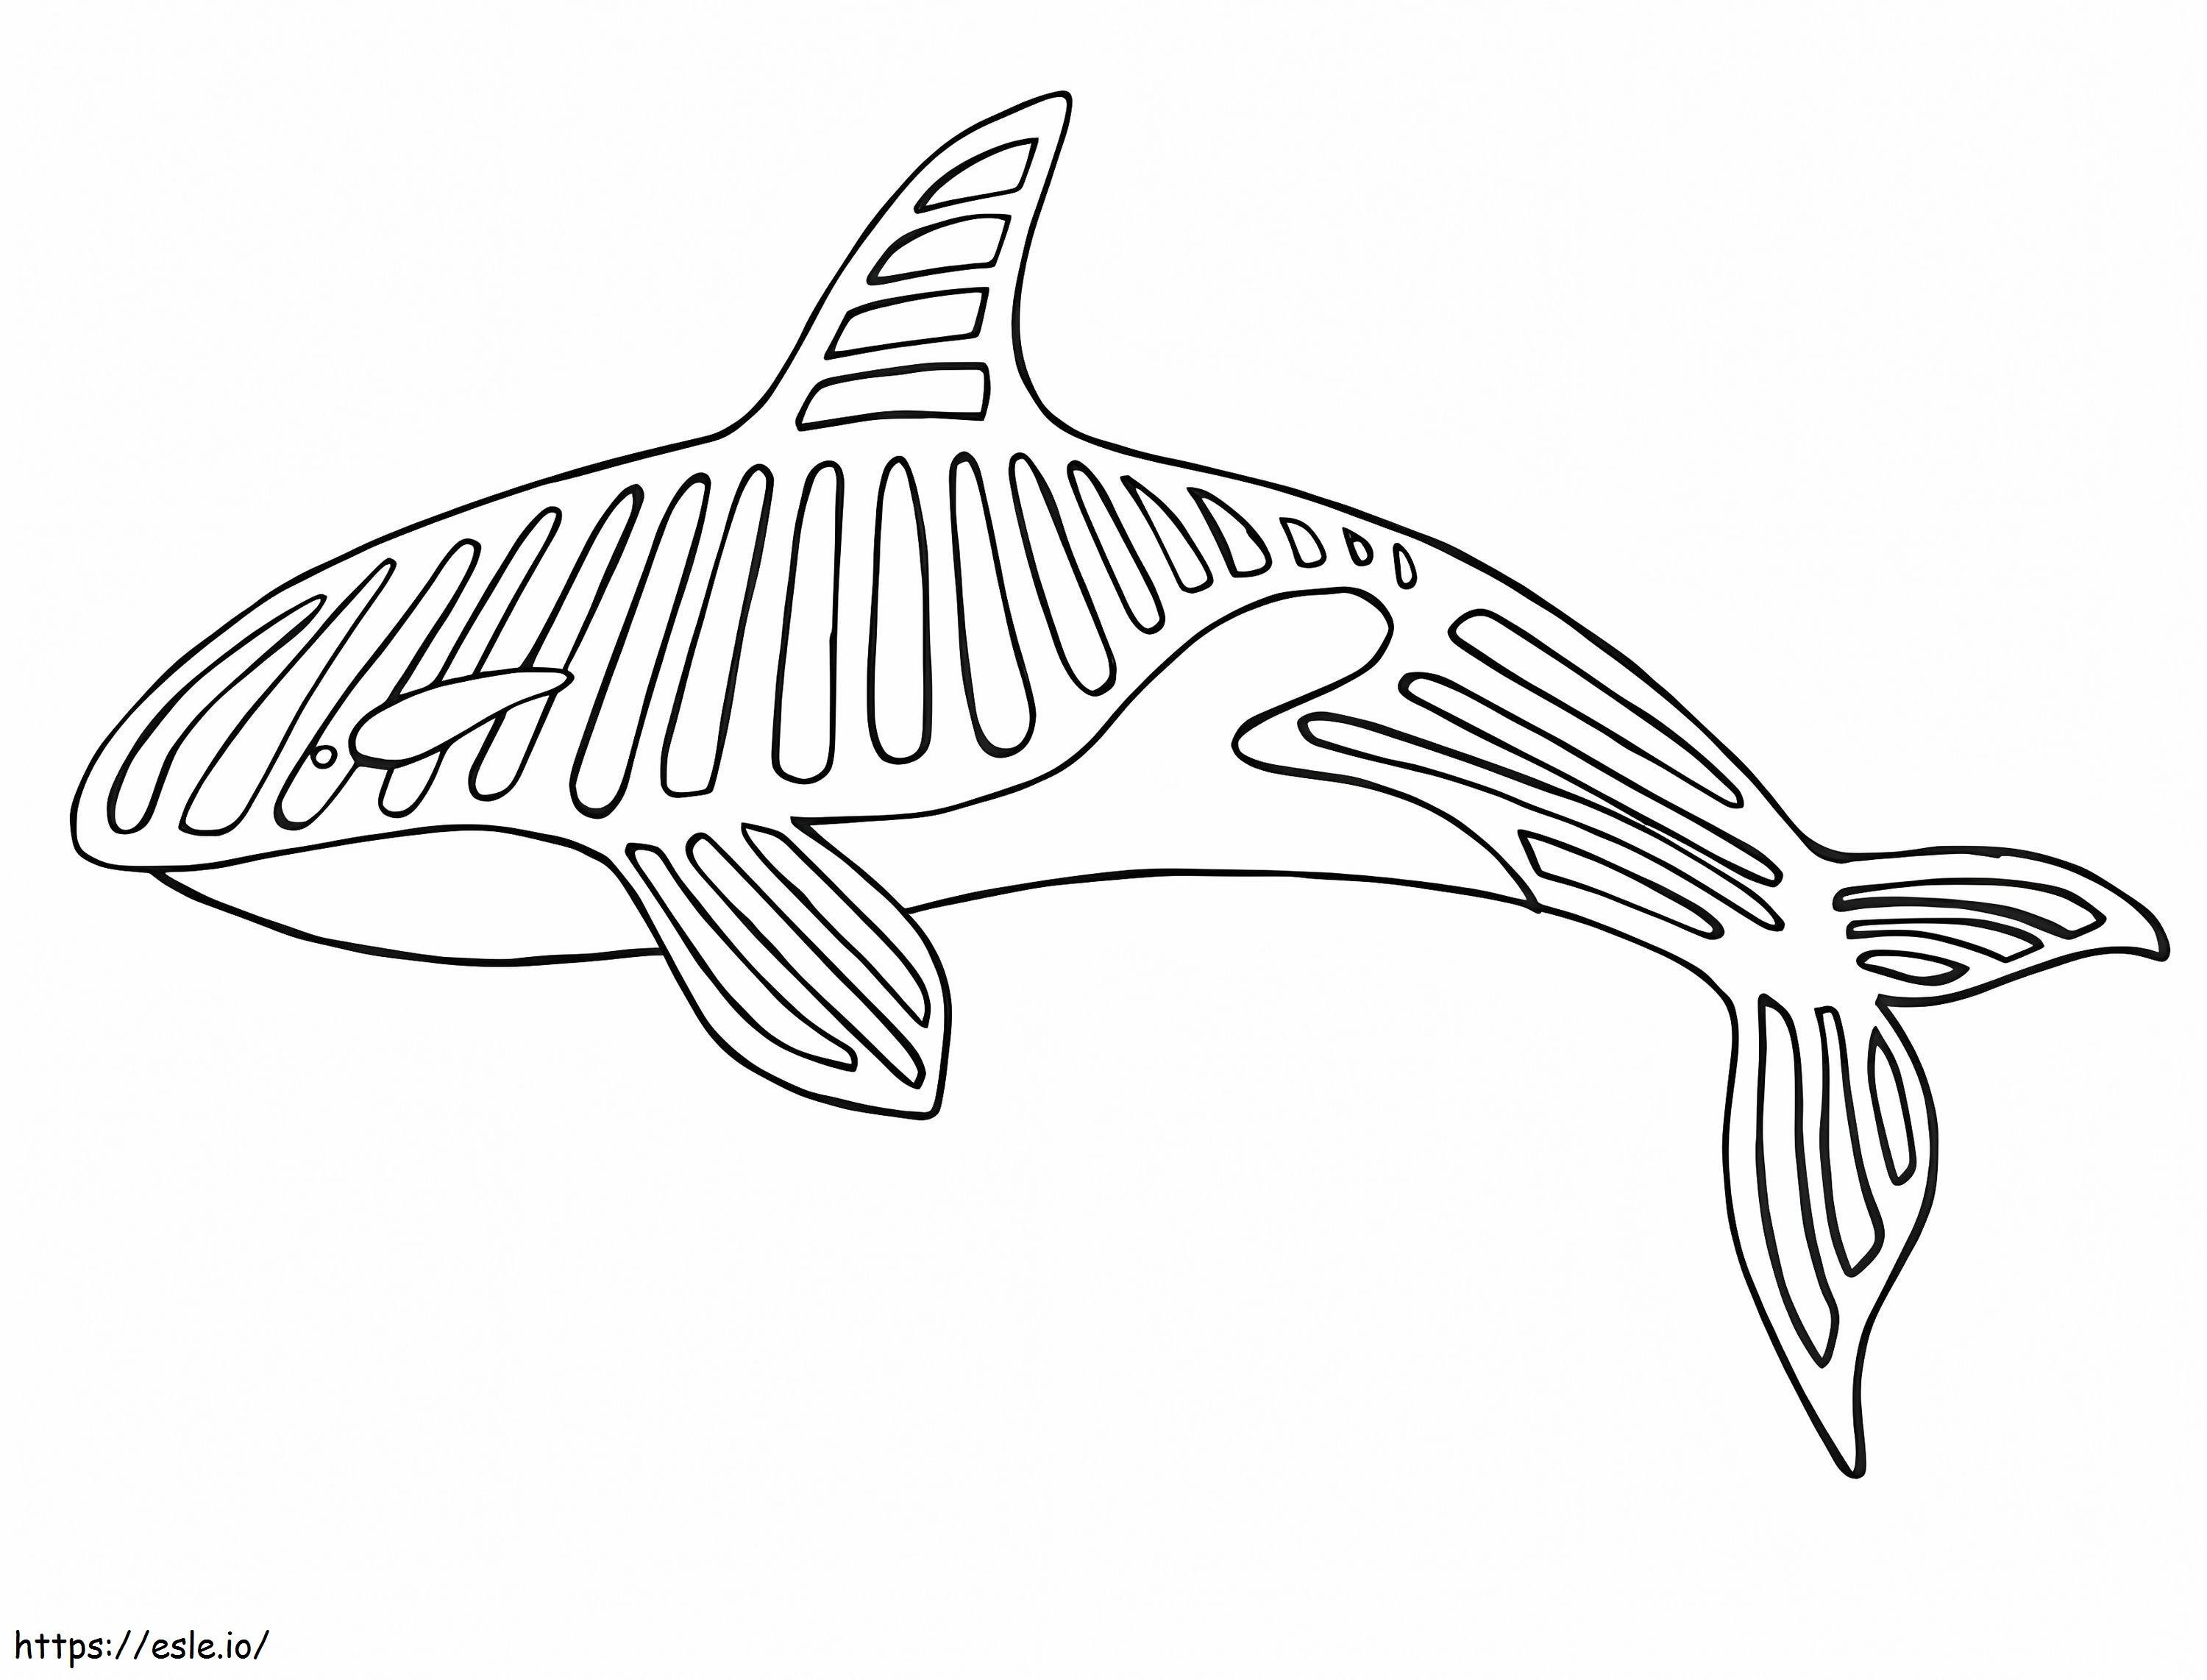 Wieloryb Alebrijes kolorowanka